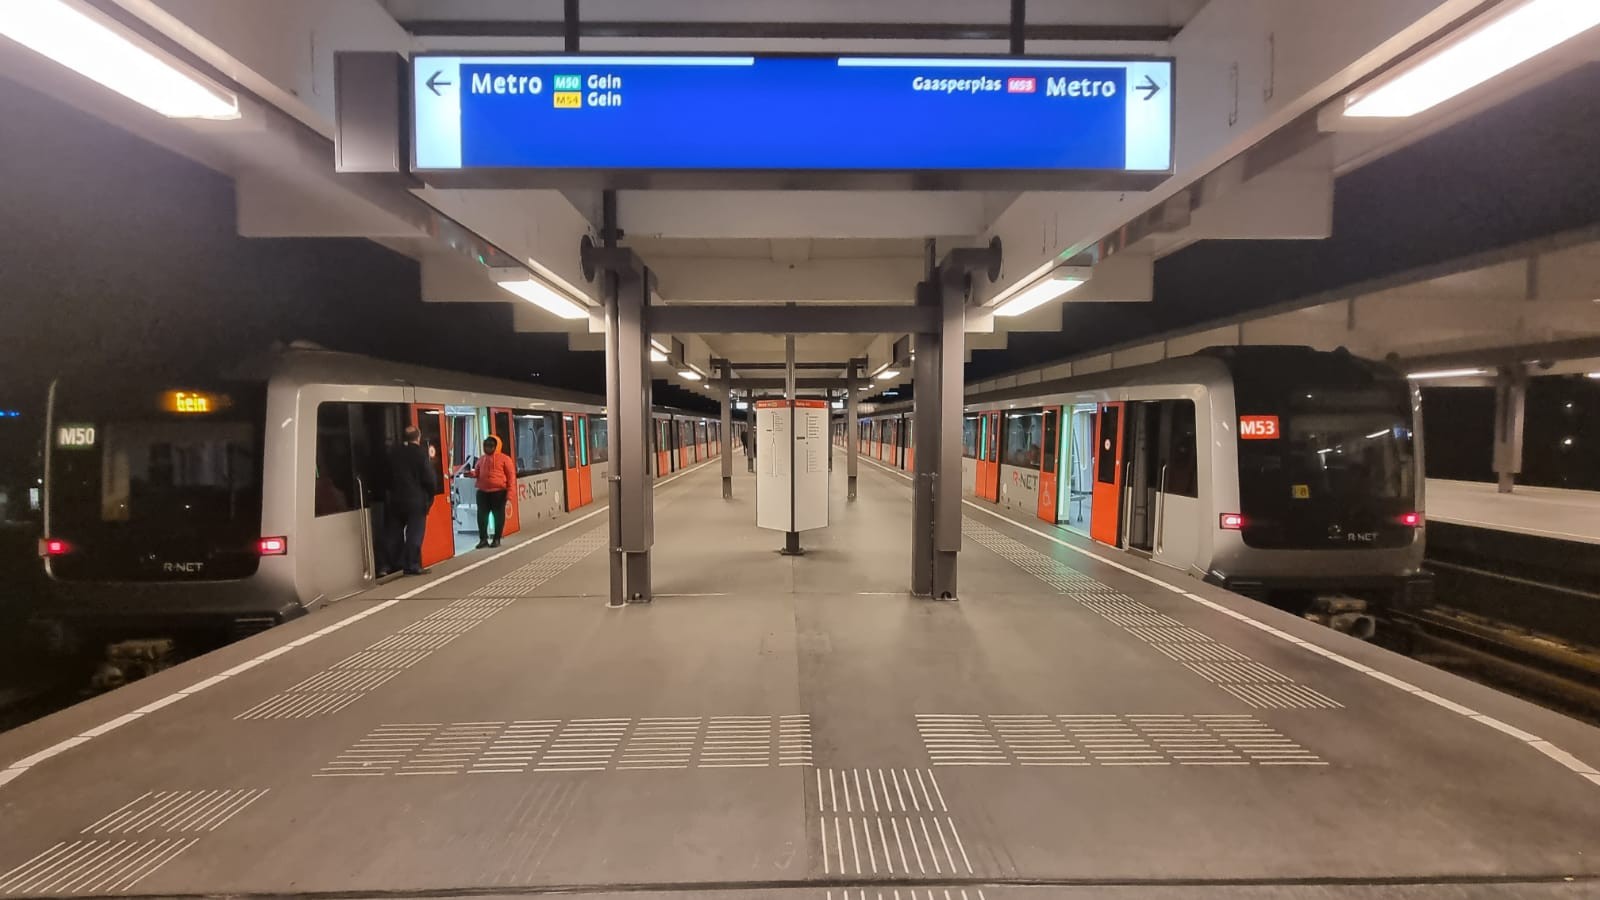 Metroverkeer wordt weer opgestart na storing